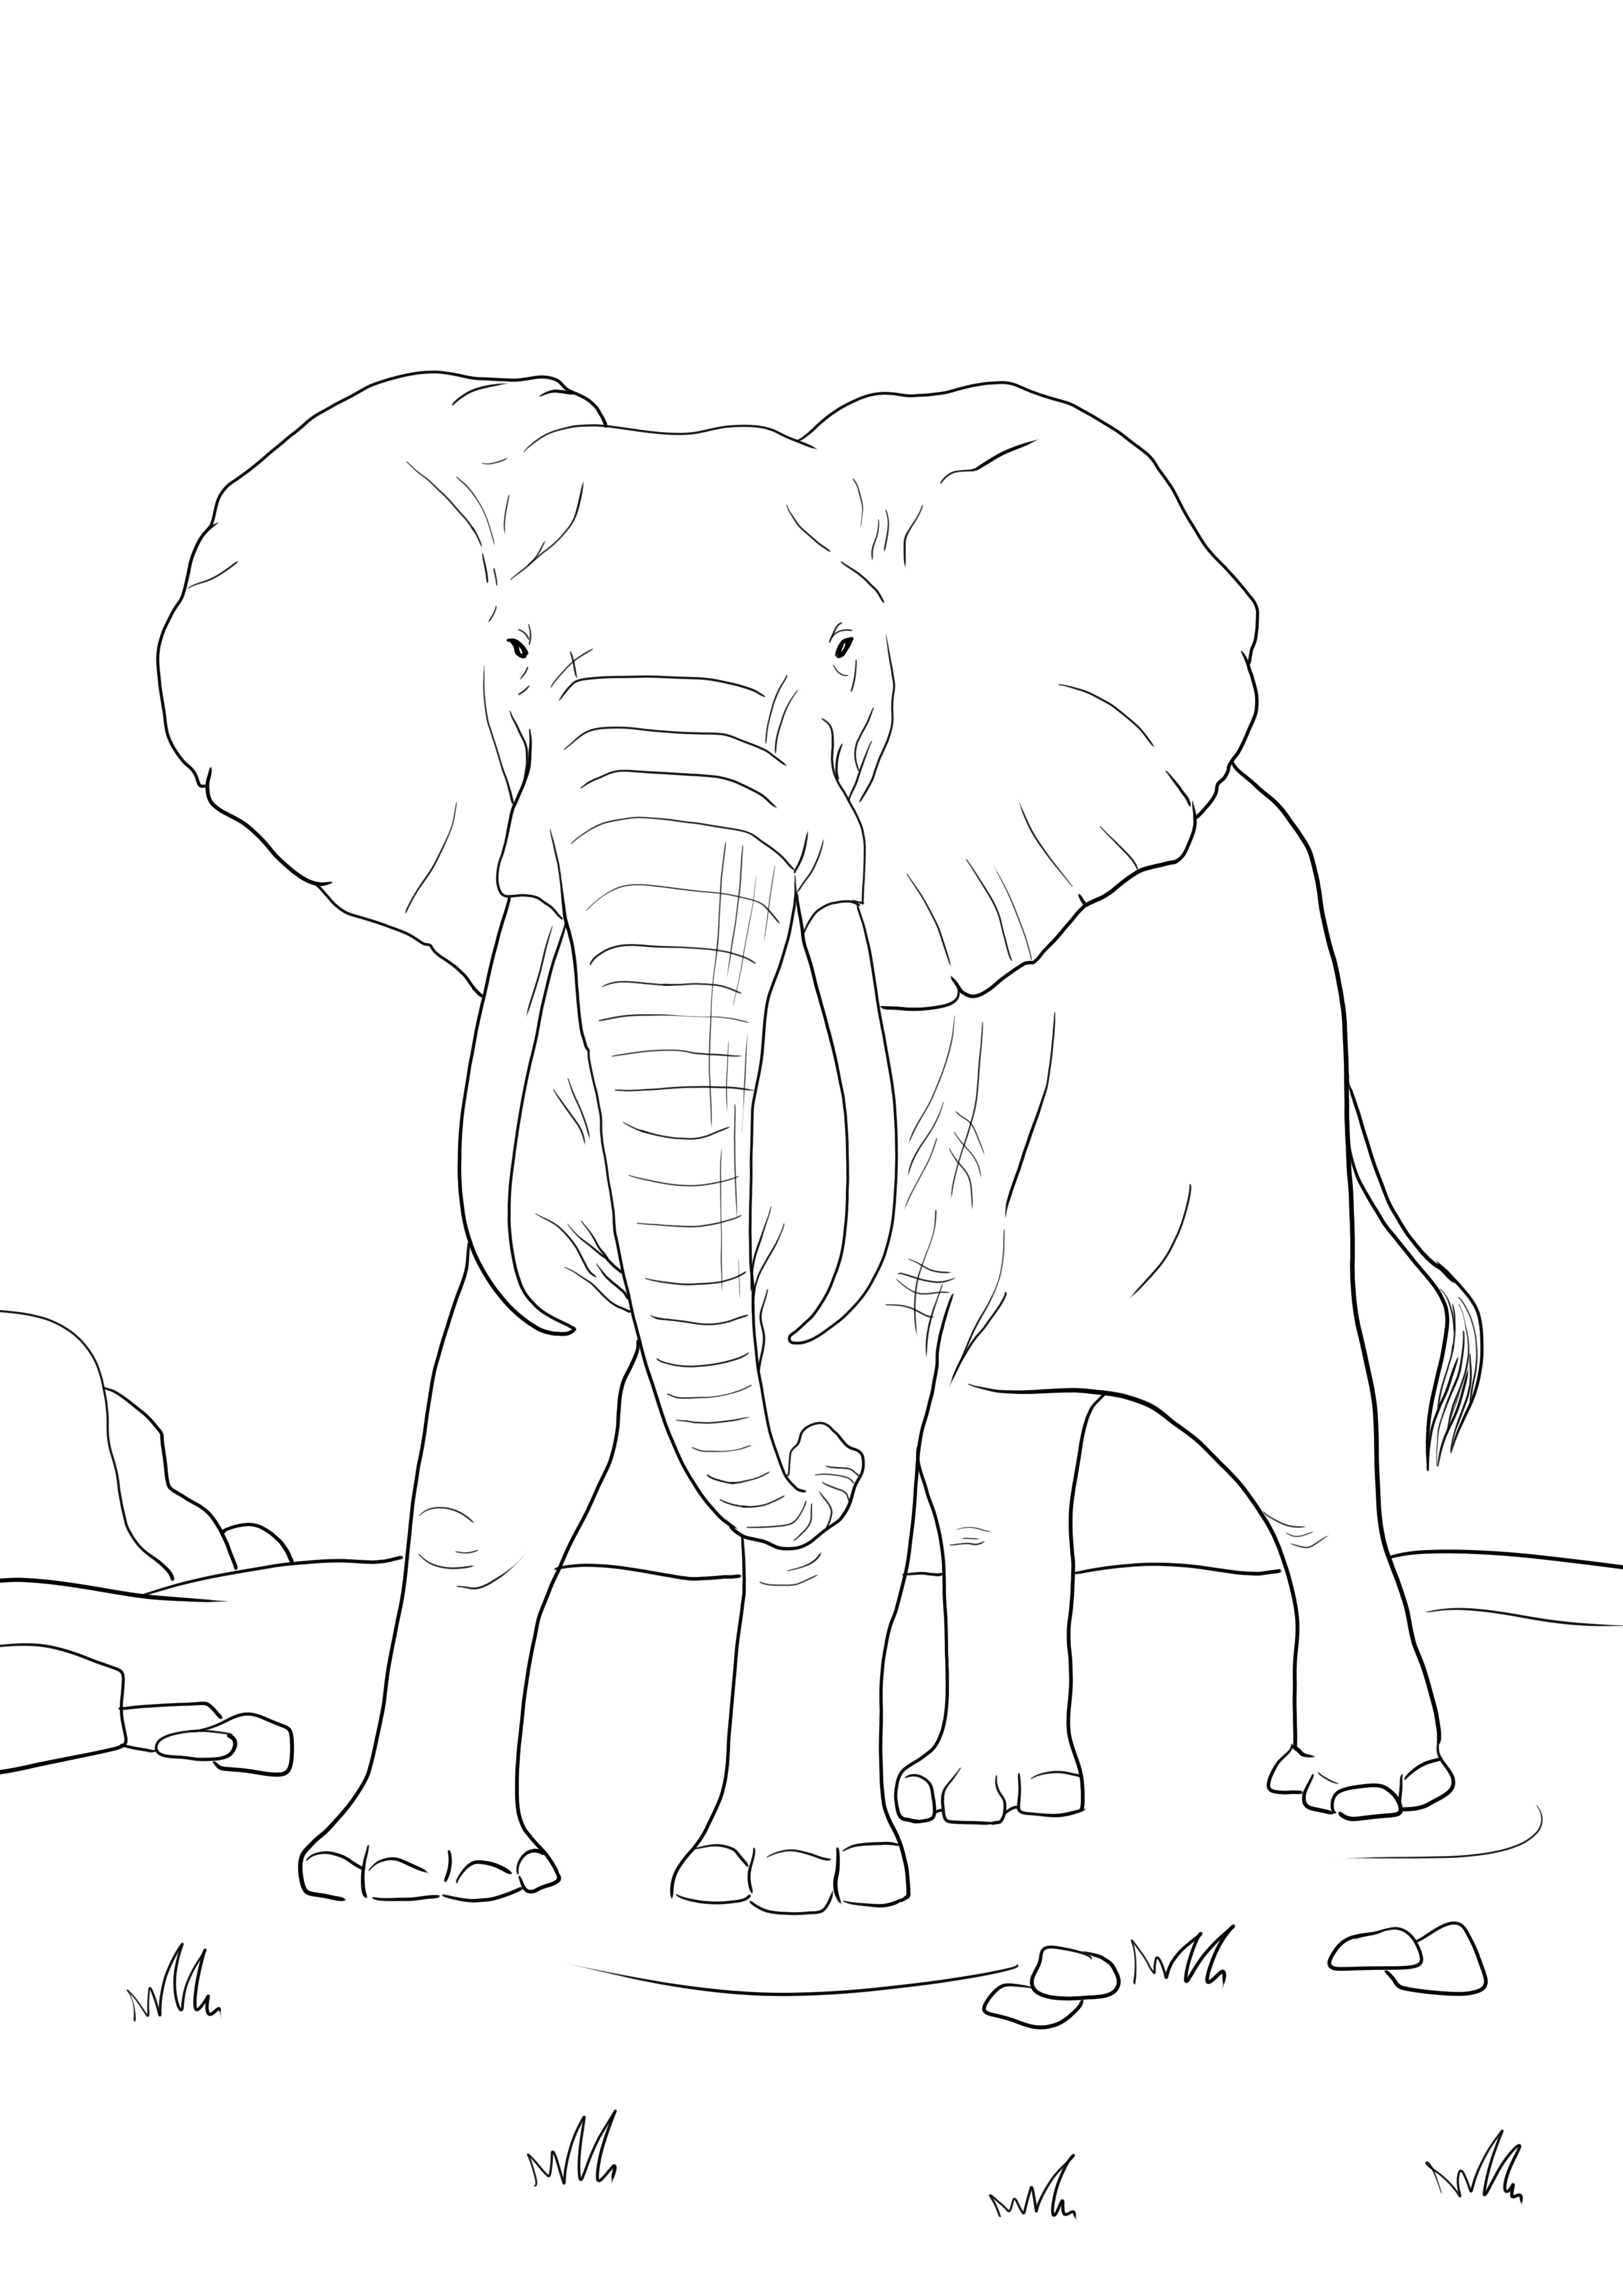 O pagină simplă de colorat a unui elefant african, care poate fi descărcată sau imprimată direct